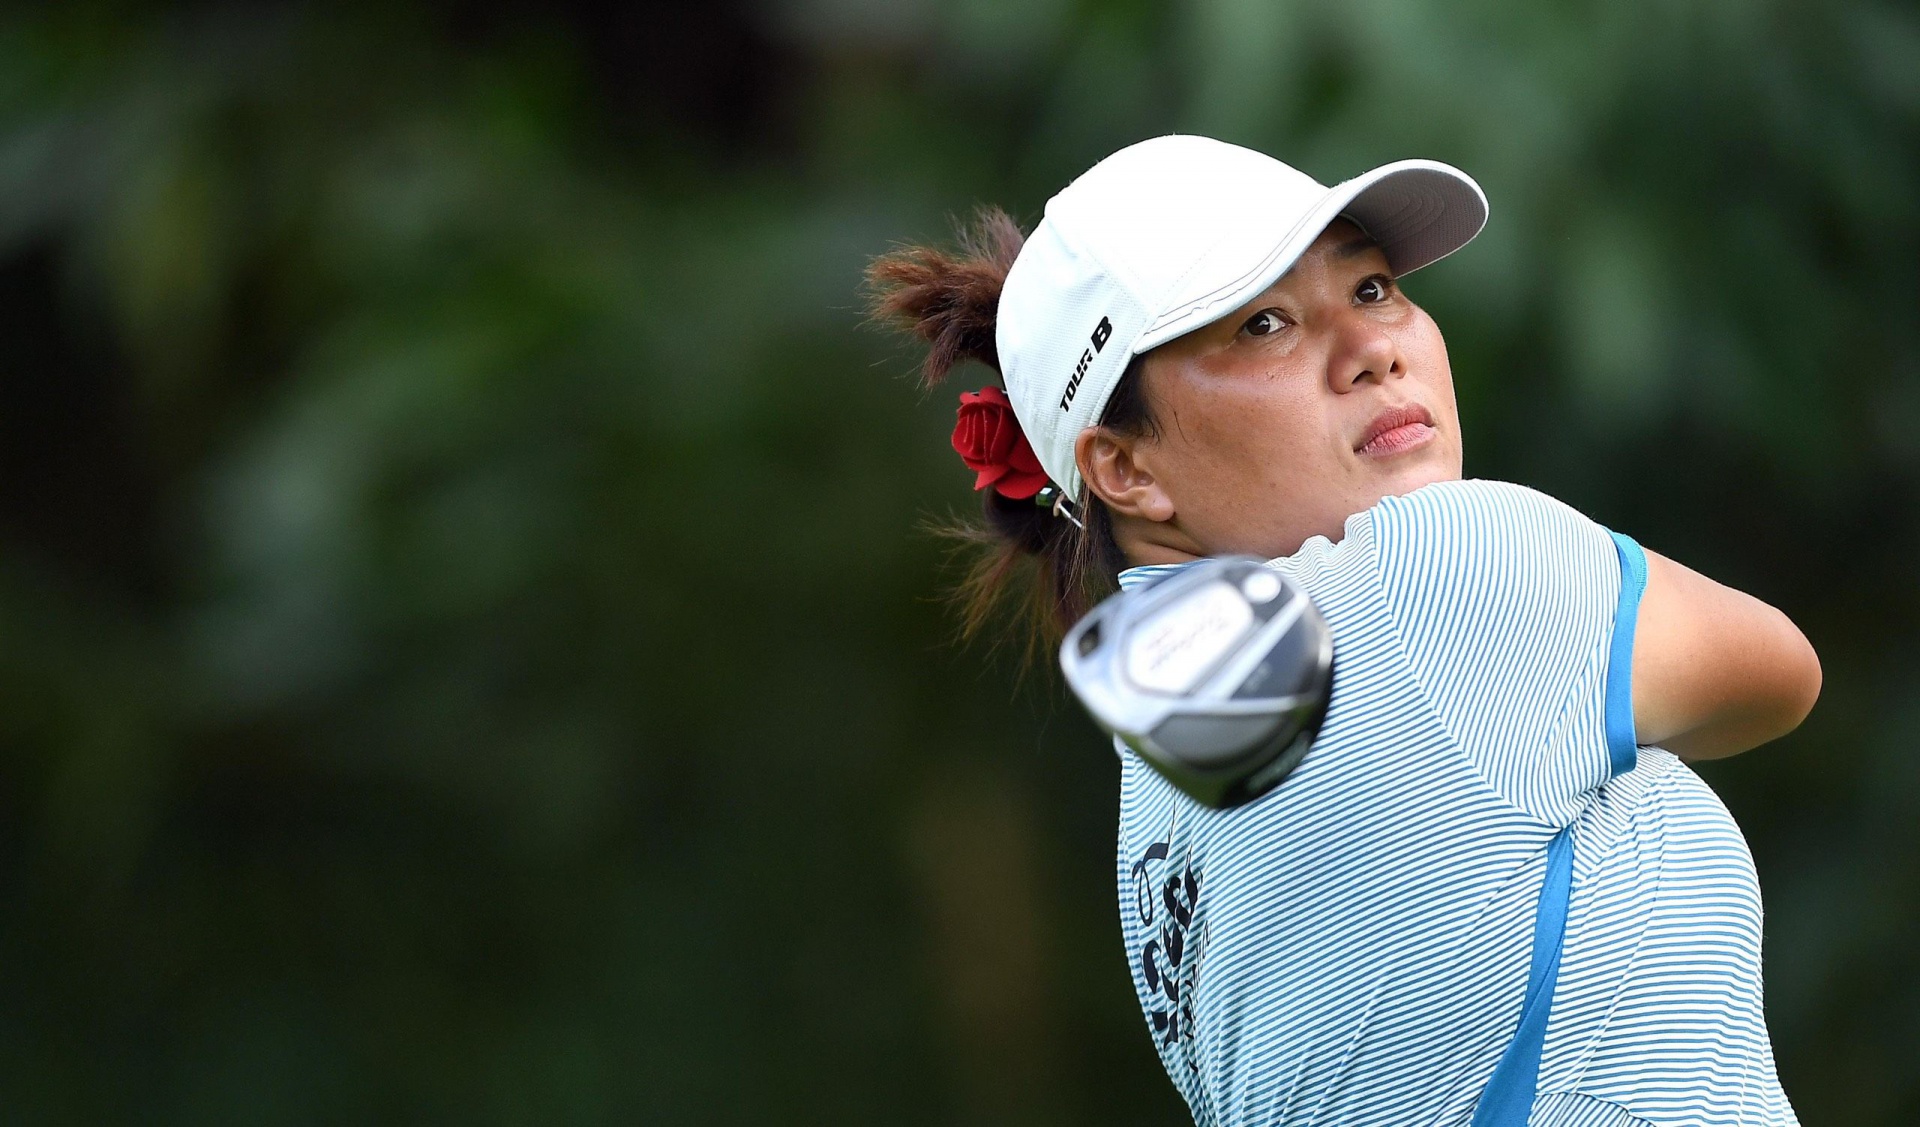 Cuộc đời chị Nguyễn Thị Thu Hà bước sang trang mới nhờ golf